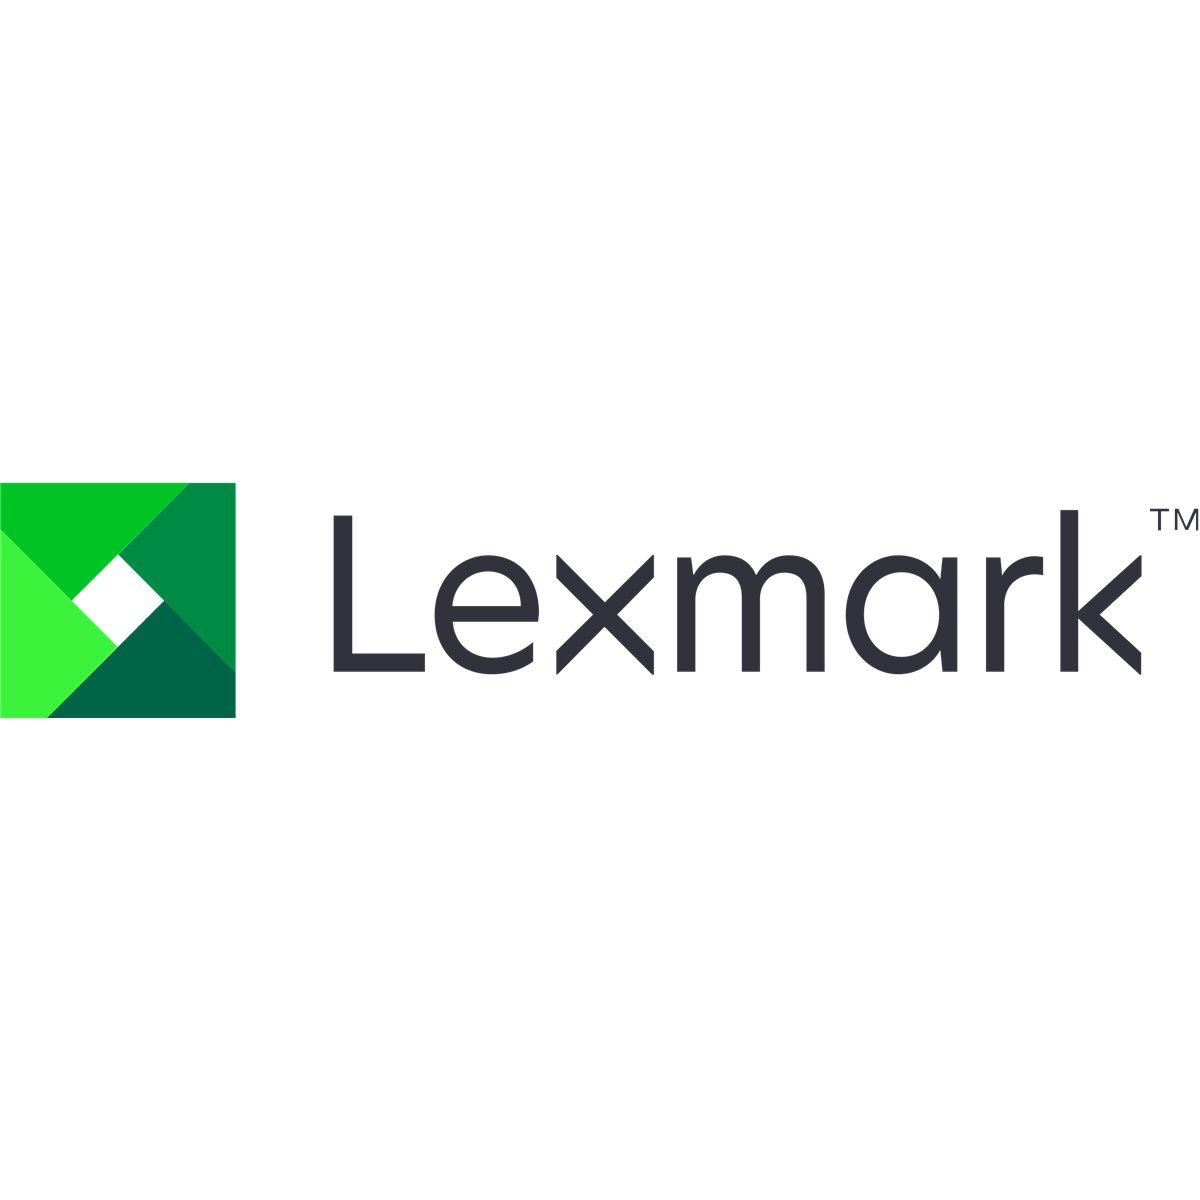 Lexmark SVC Motor Ep developer toner add motor